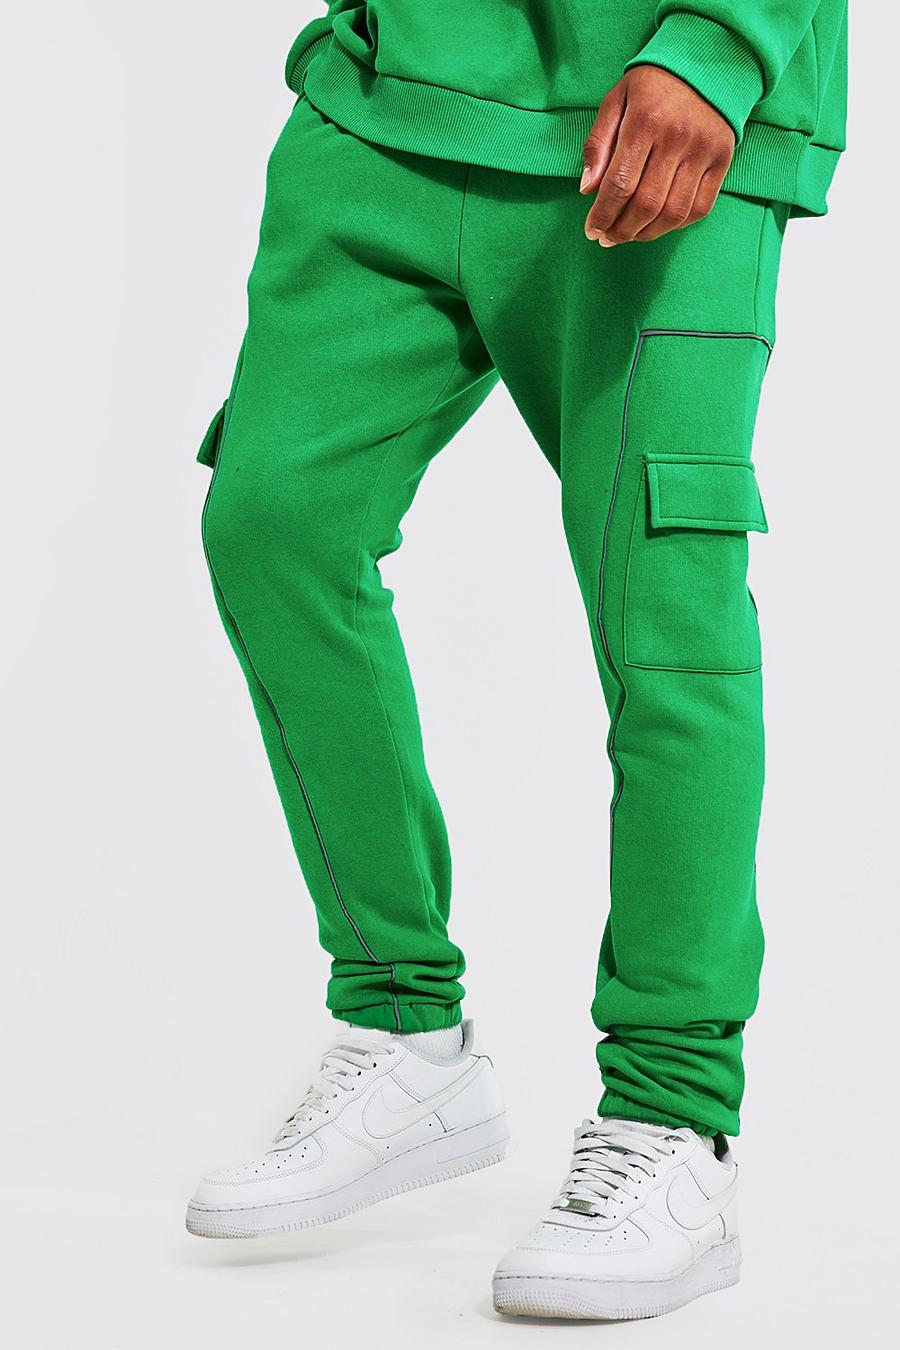 Pantaloni tuta Cargo Tall con cordoncino riflettente, Bright green gerde